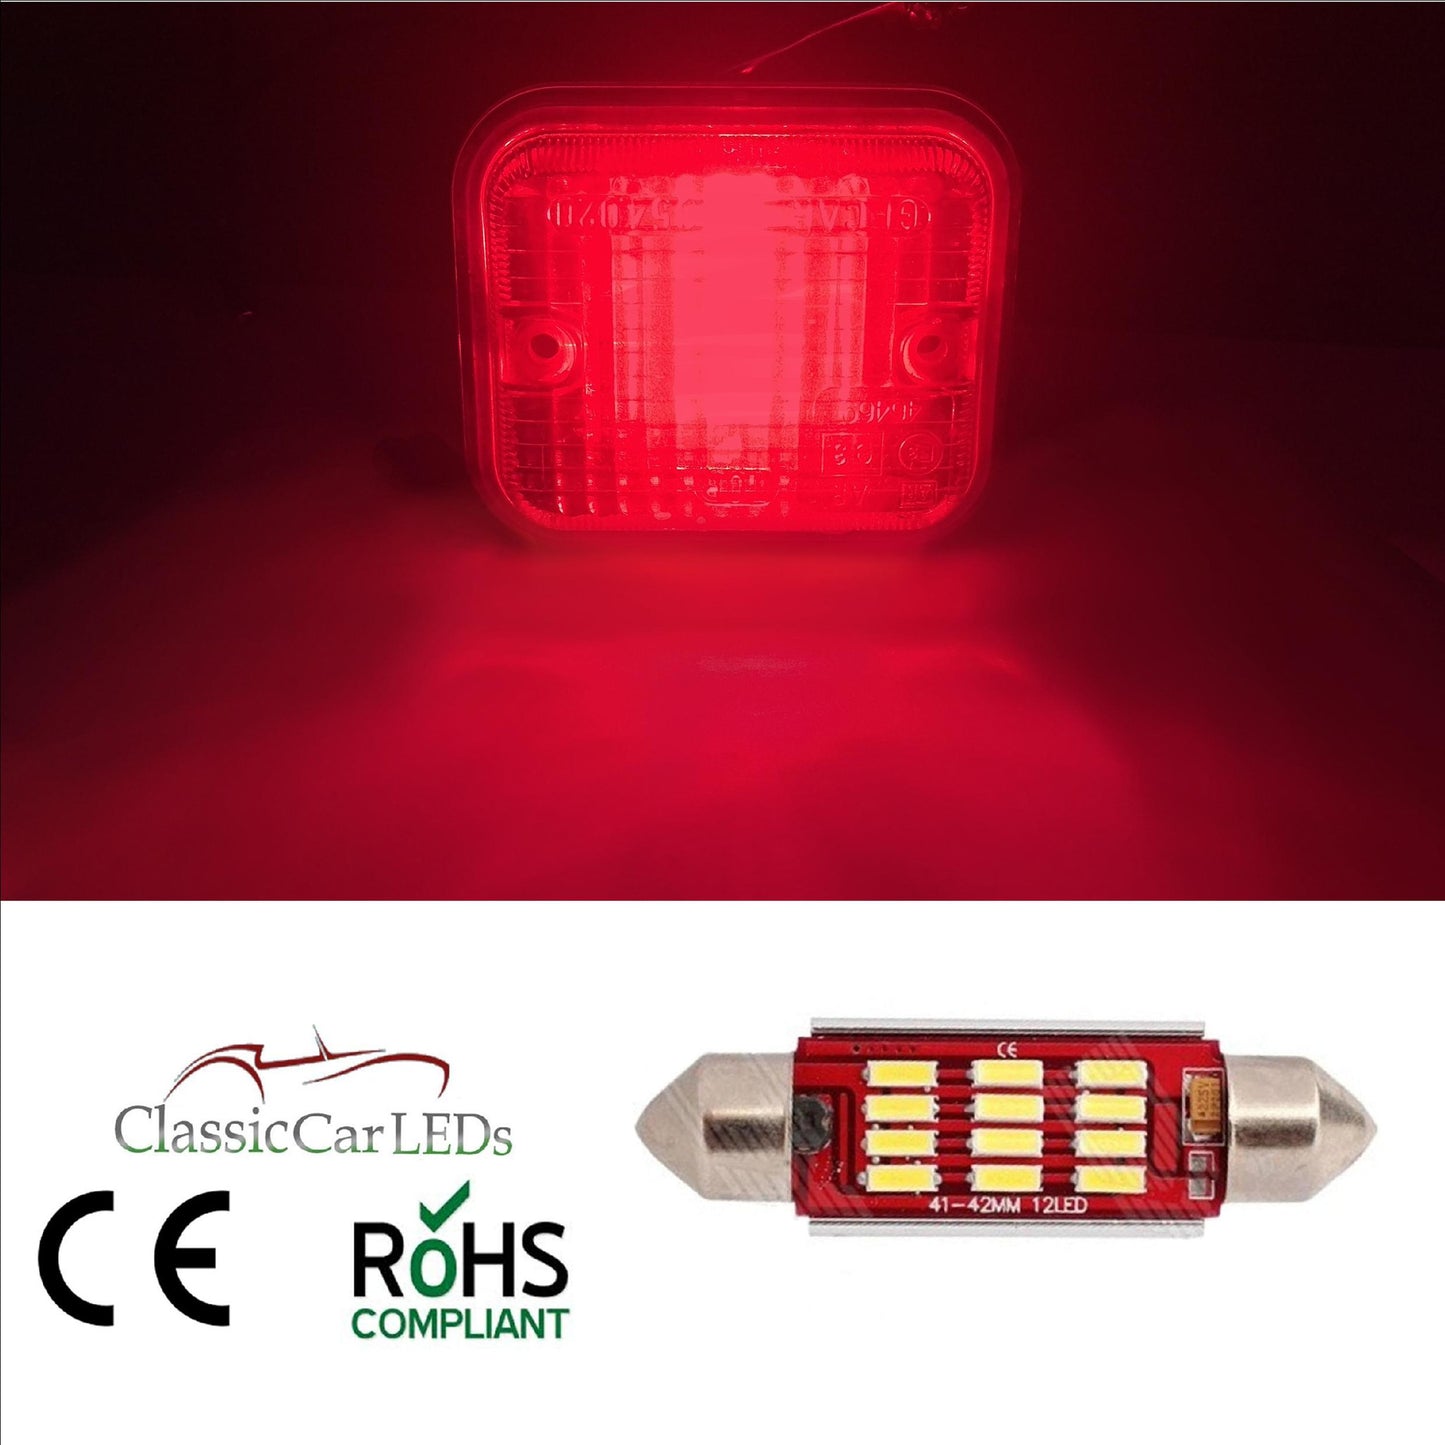 CLASSIC CAR LED RED FOG STOP BRAKE LIGHT BULB GLB273 4014 SMD 12 LED 42mm 270